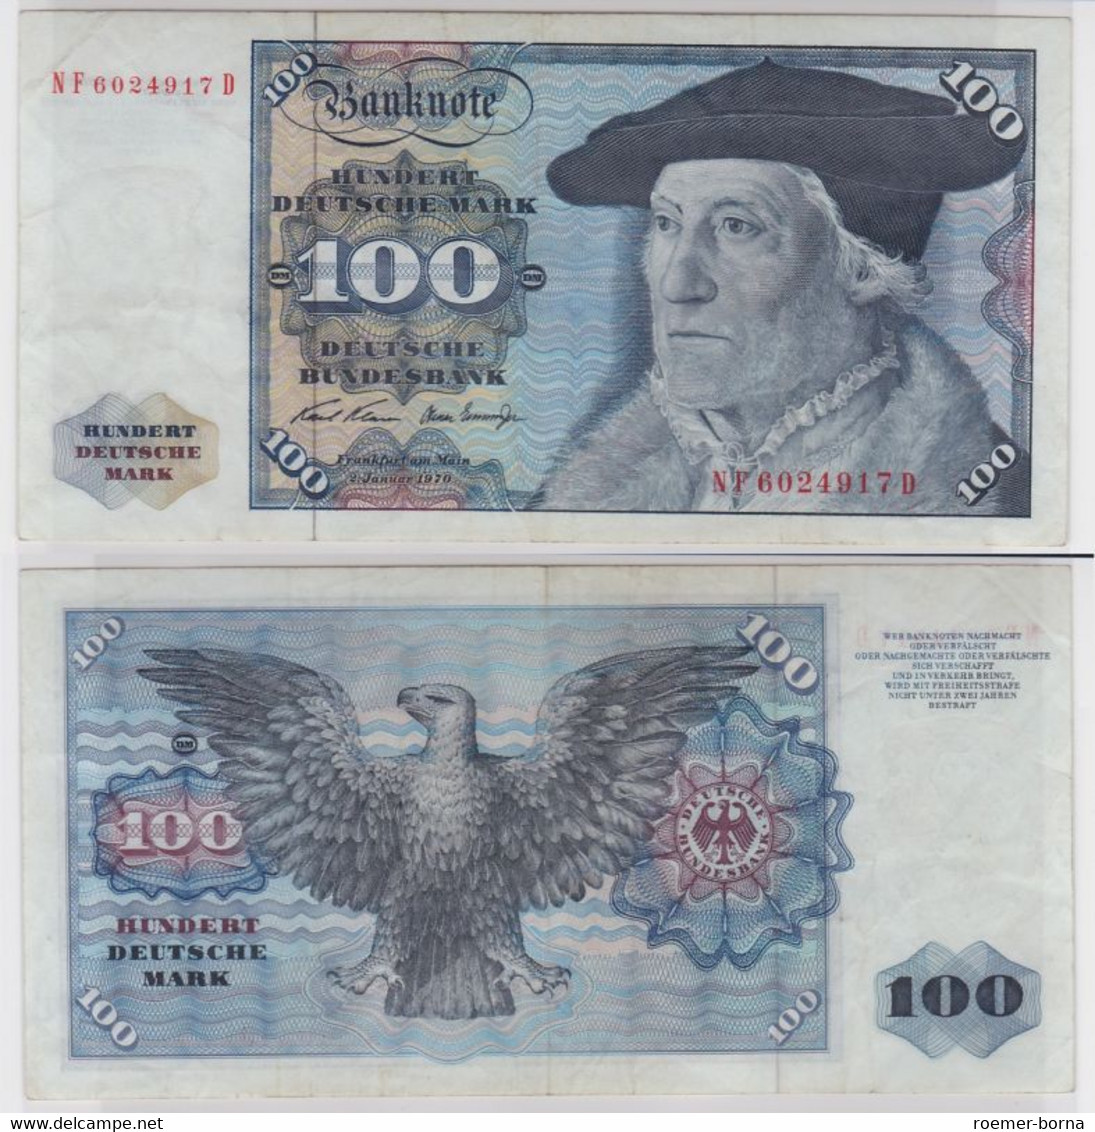 T146049 Banknote 100 DM Deutsche Mark Ro. 273b Schein 2.Jan 1970 KN NF 6024917 D - 100 DM